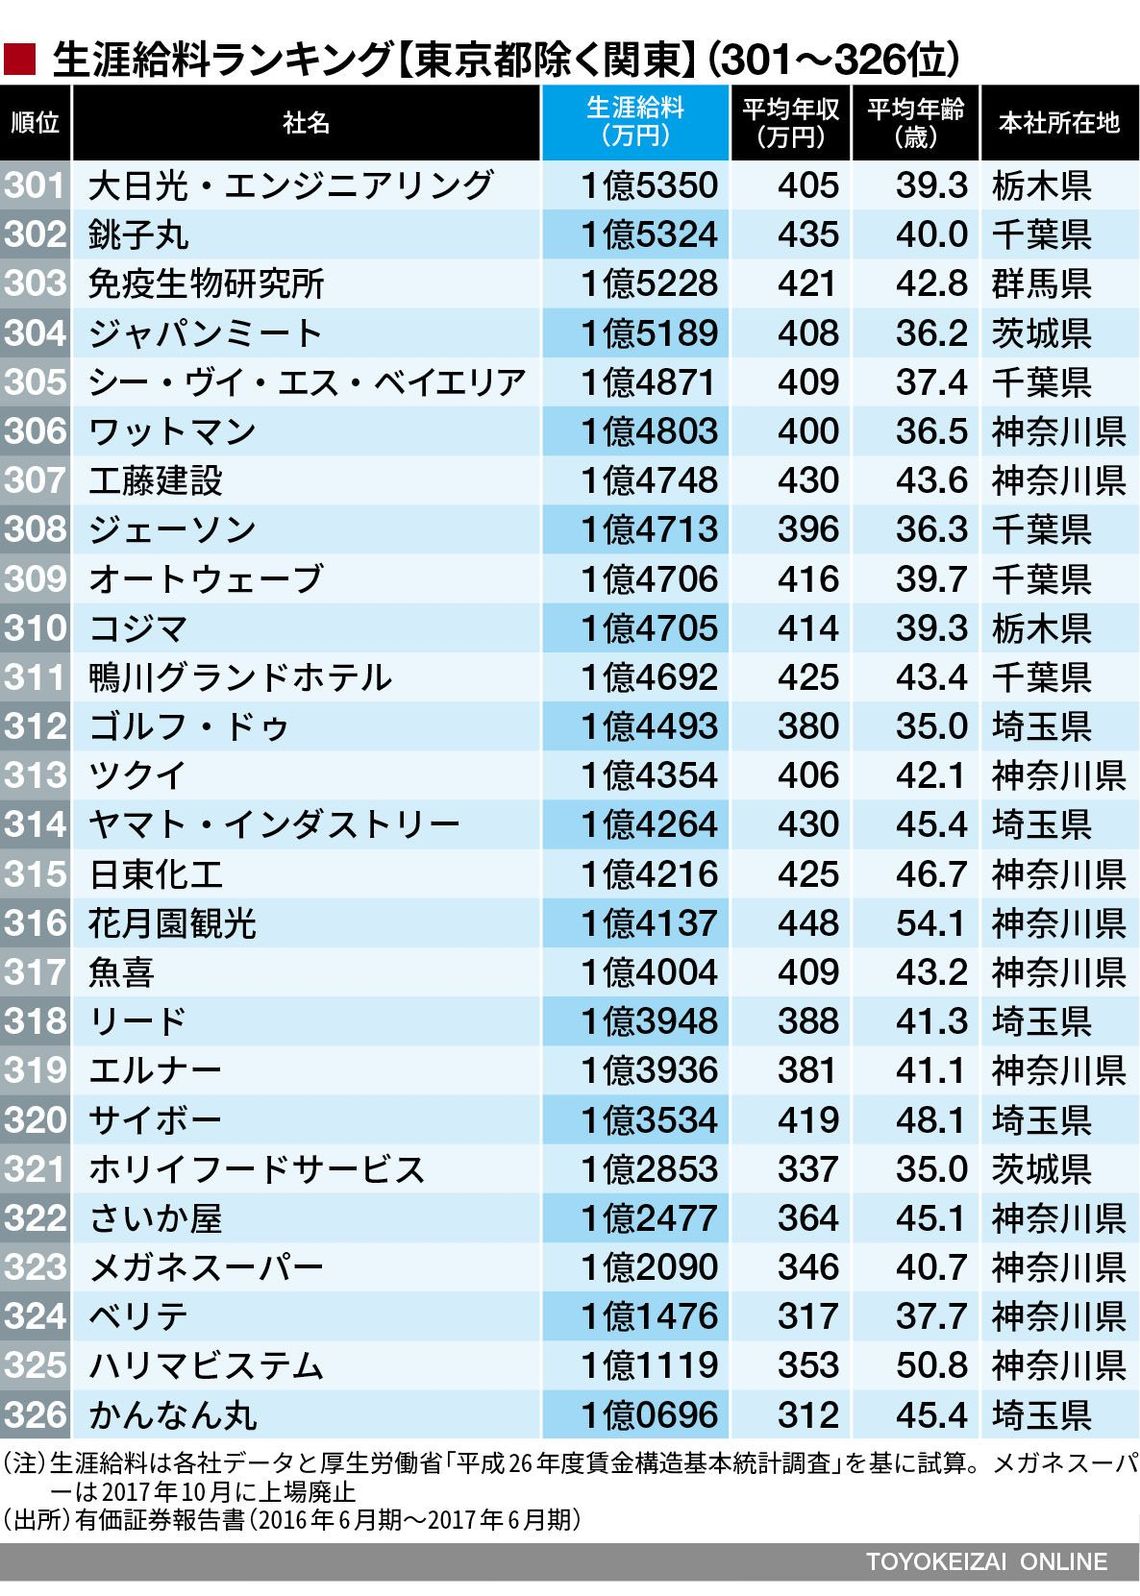 生涯給料 東京除く関東 の326社ランキング 賃金 生涯給料ランキング 東洋経済オンライン 経済ニュースの新基準